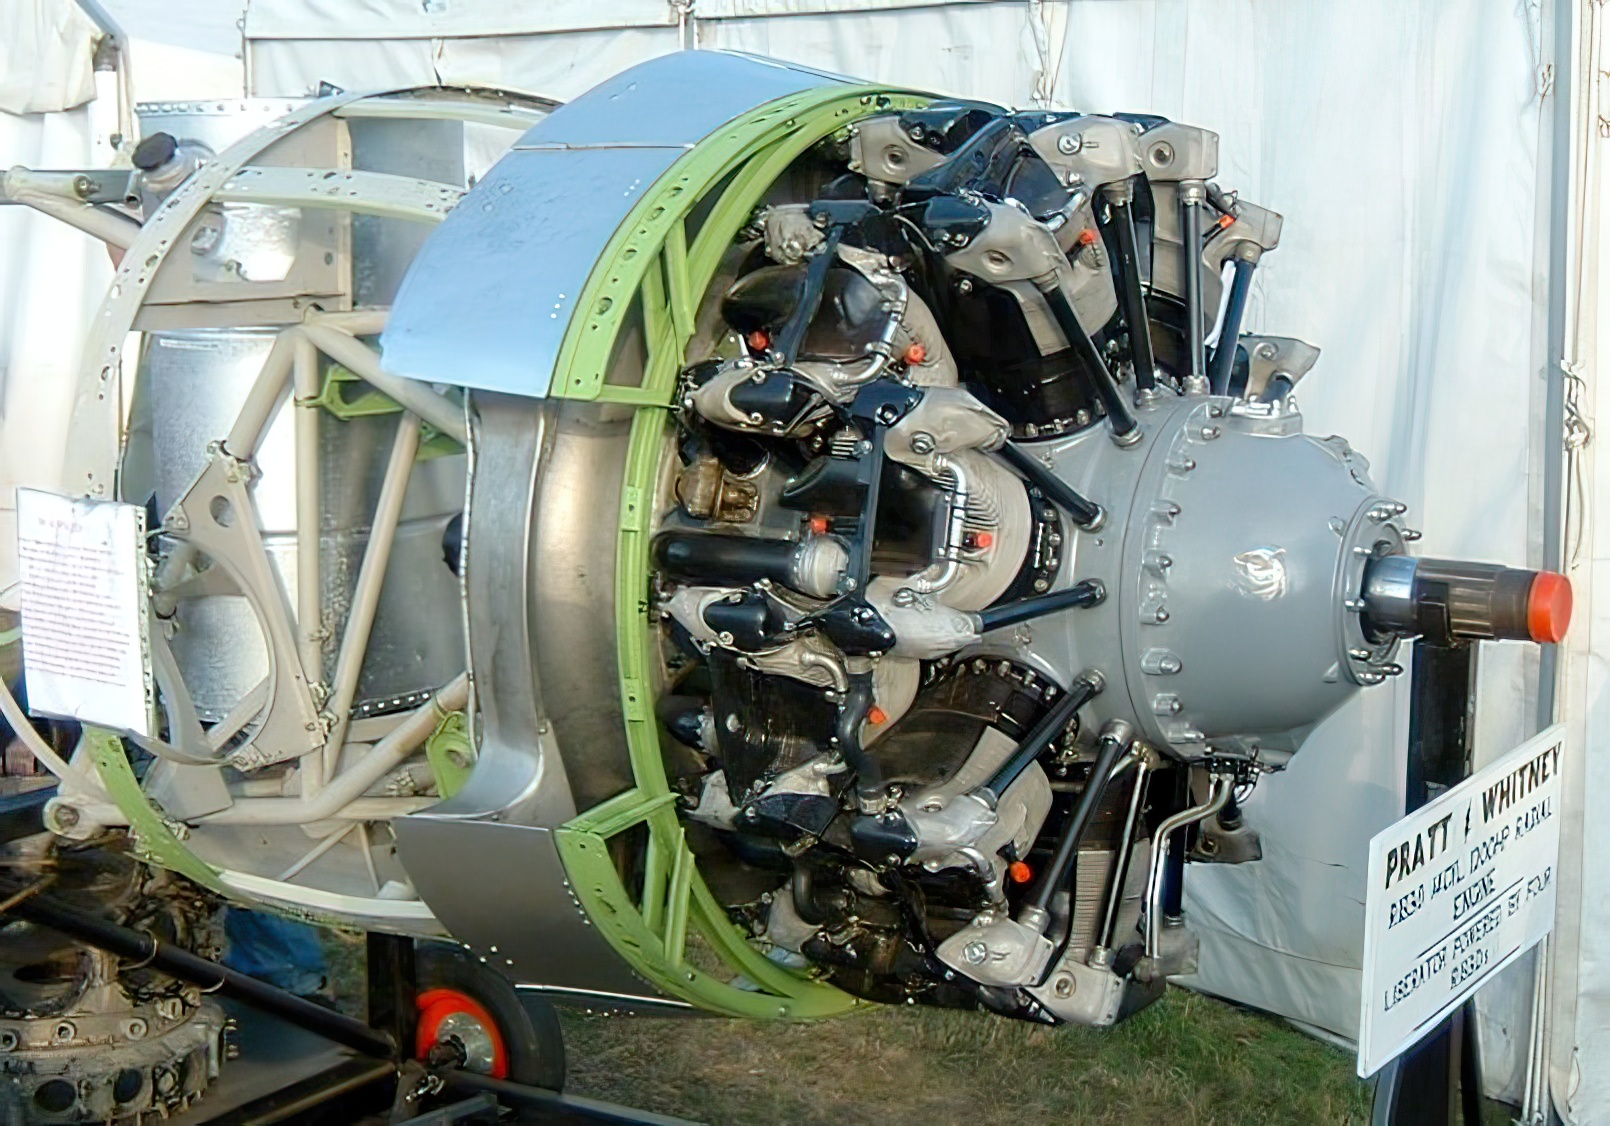 Pratt & Whitney R-1830 Twin Wasp 14-cylinder twin row radial engine